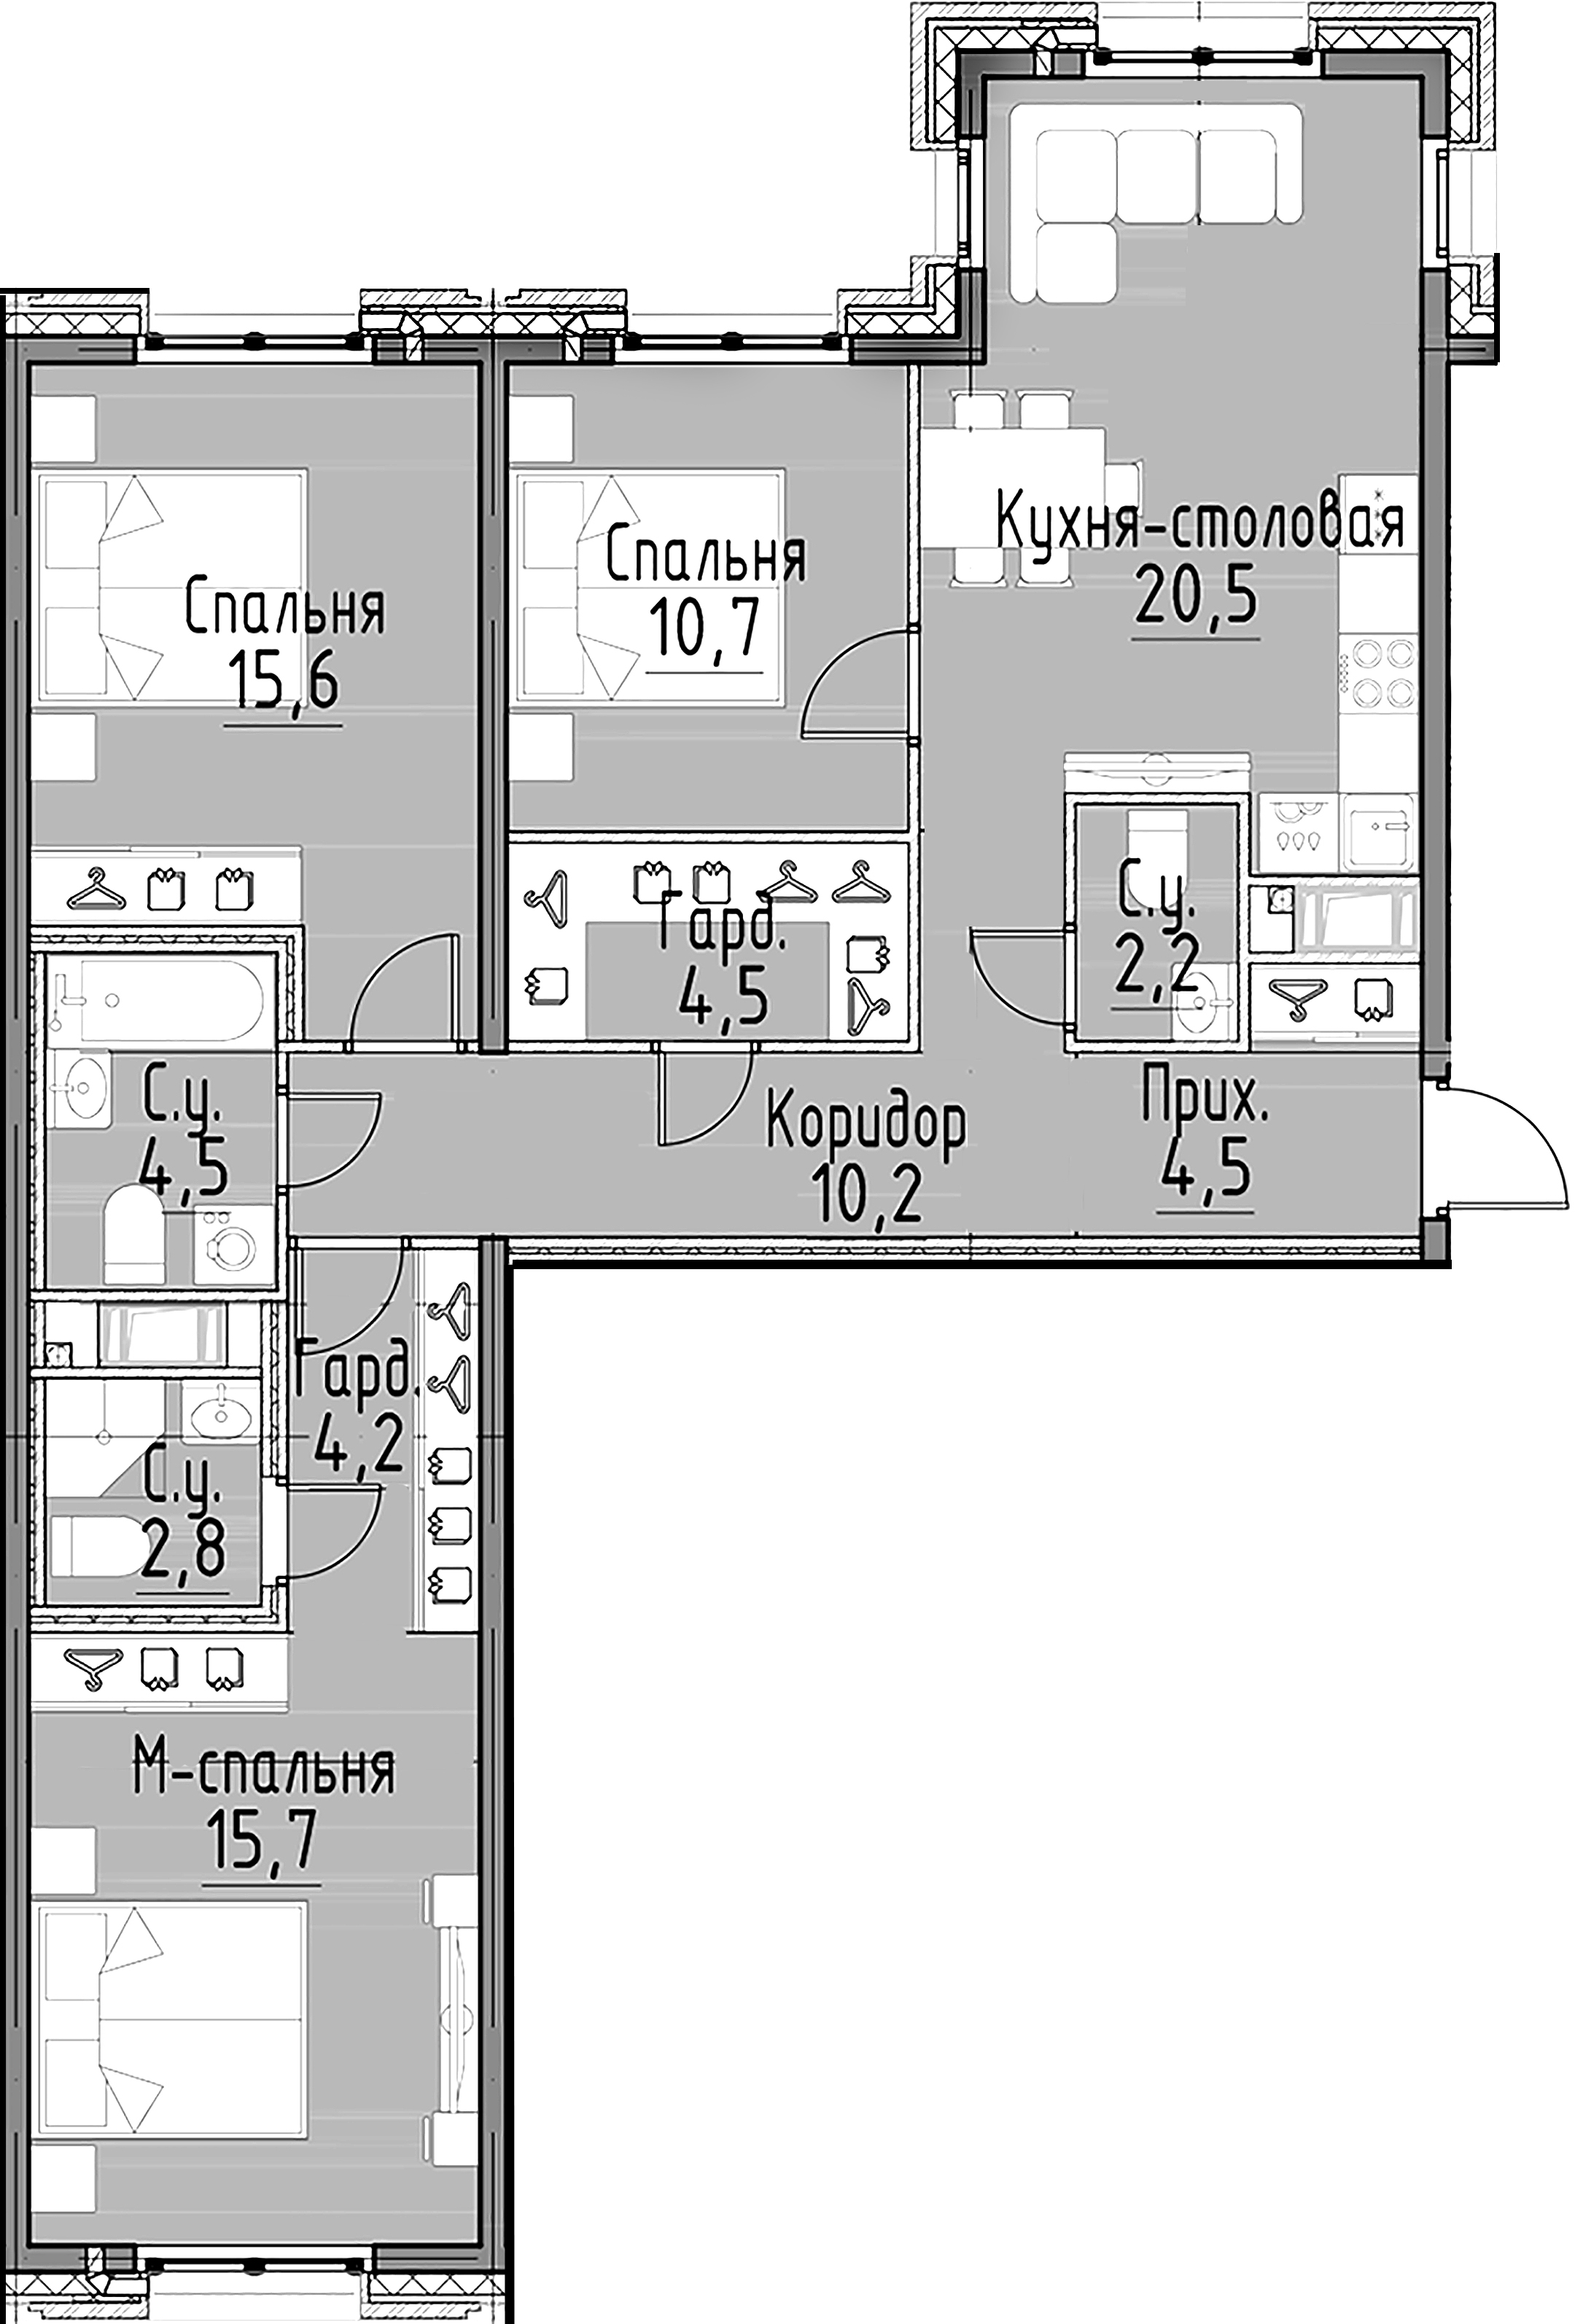 3-комнатная квартира №10 в: Моисеенко, 10: 95.5 м²; этаж: 3 - купить в Санкт-Петербурге